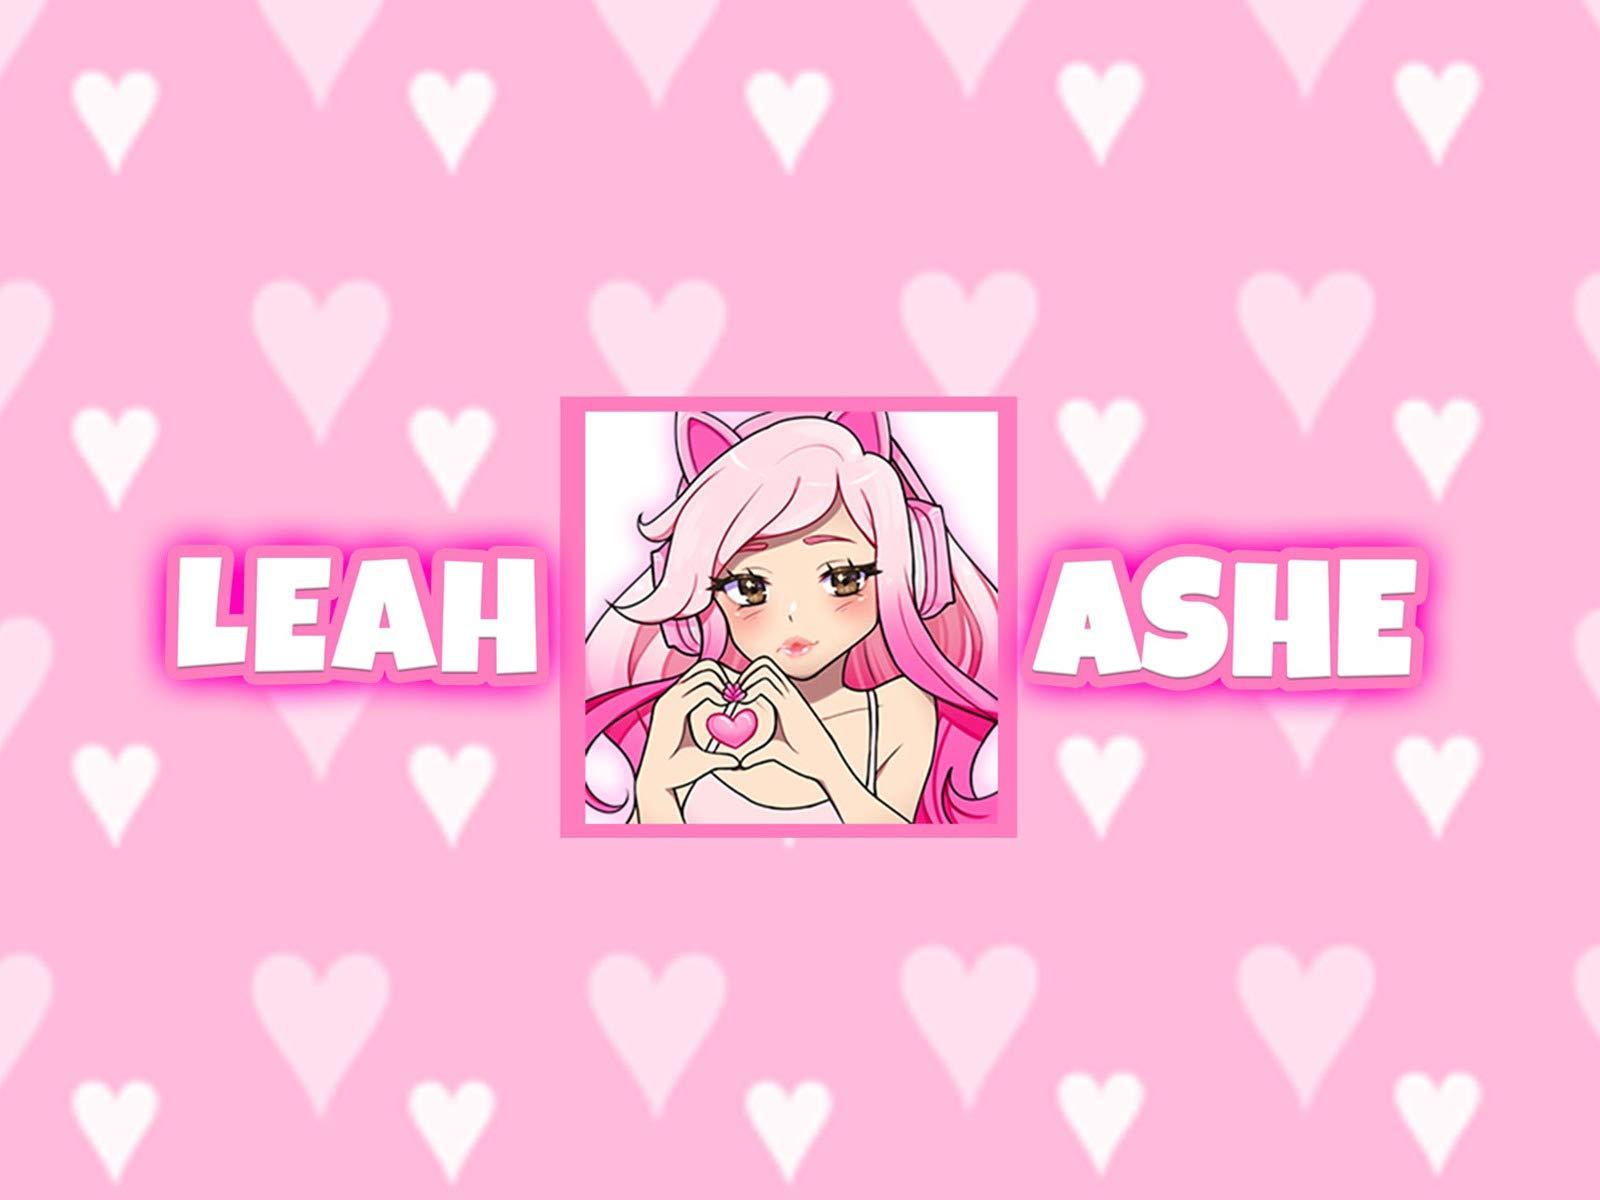 leah ashe roblox avatar